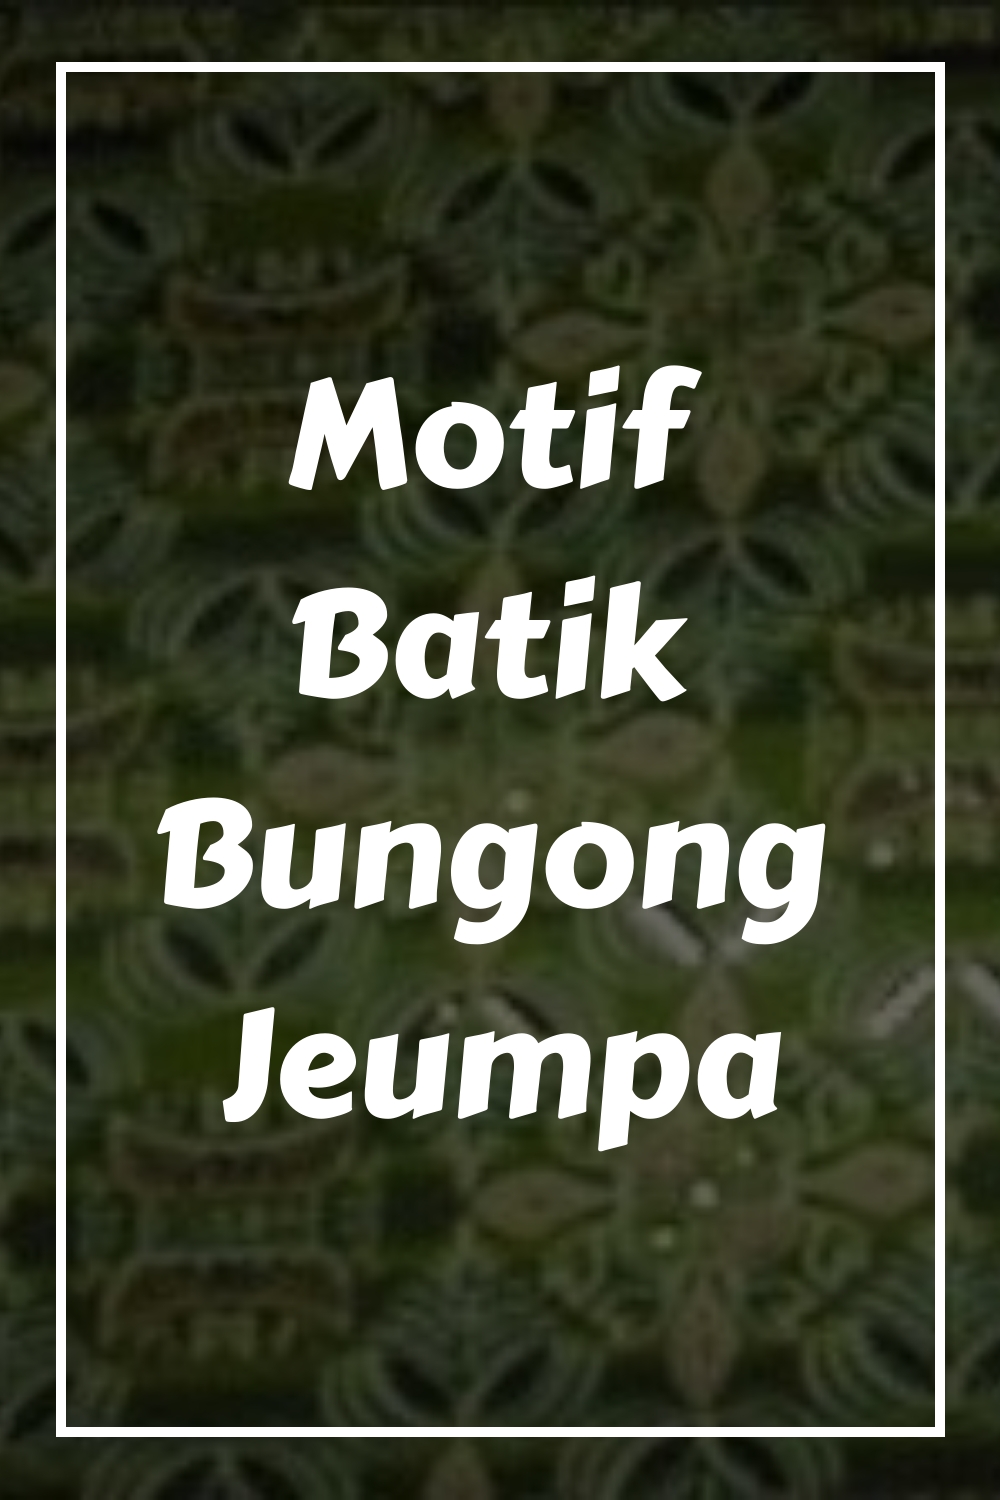 Motif Batik Bungong Jeumpa generated pin 1879